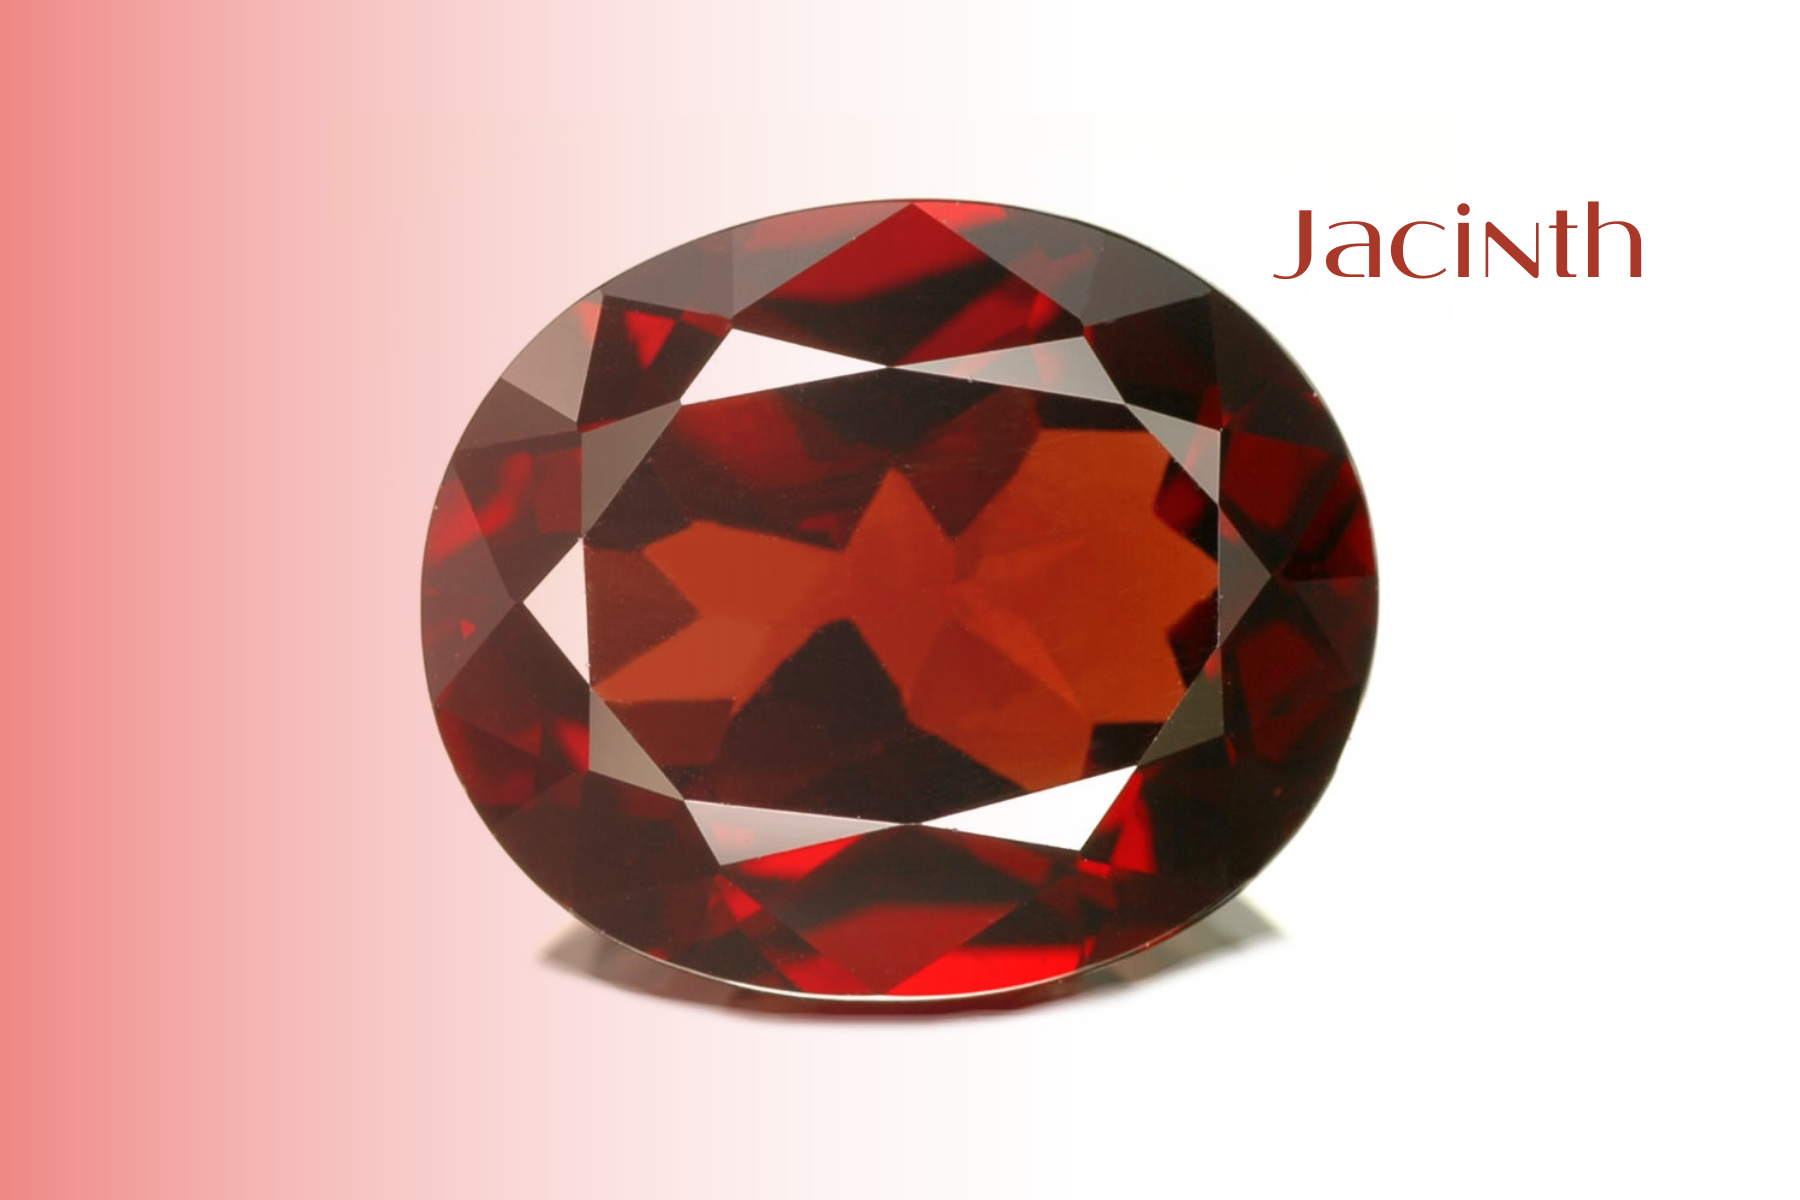 Oblong jacinth stone